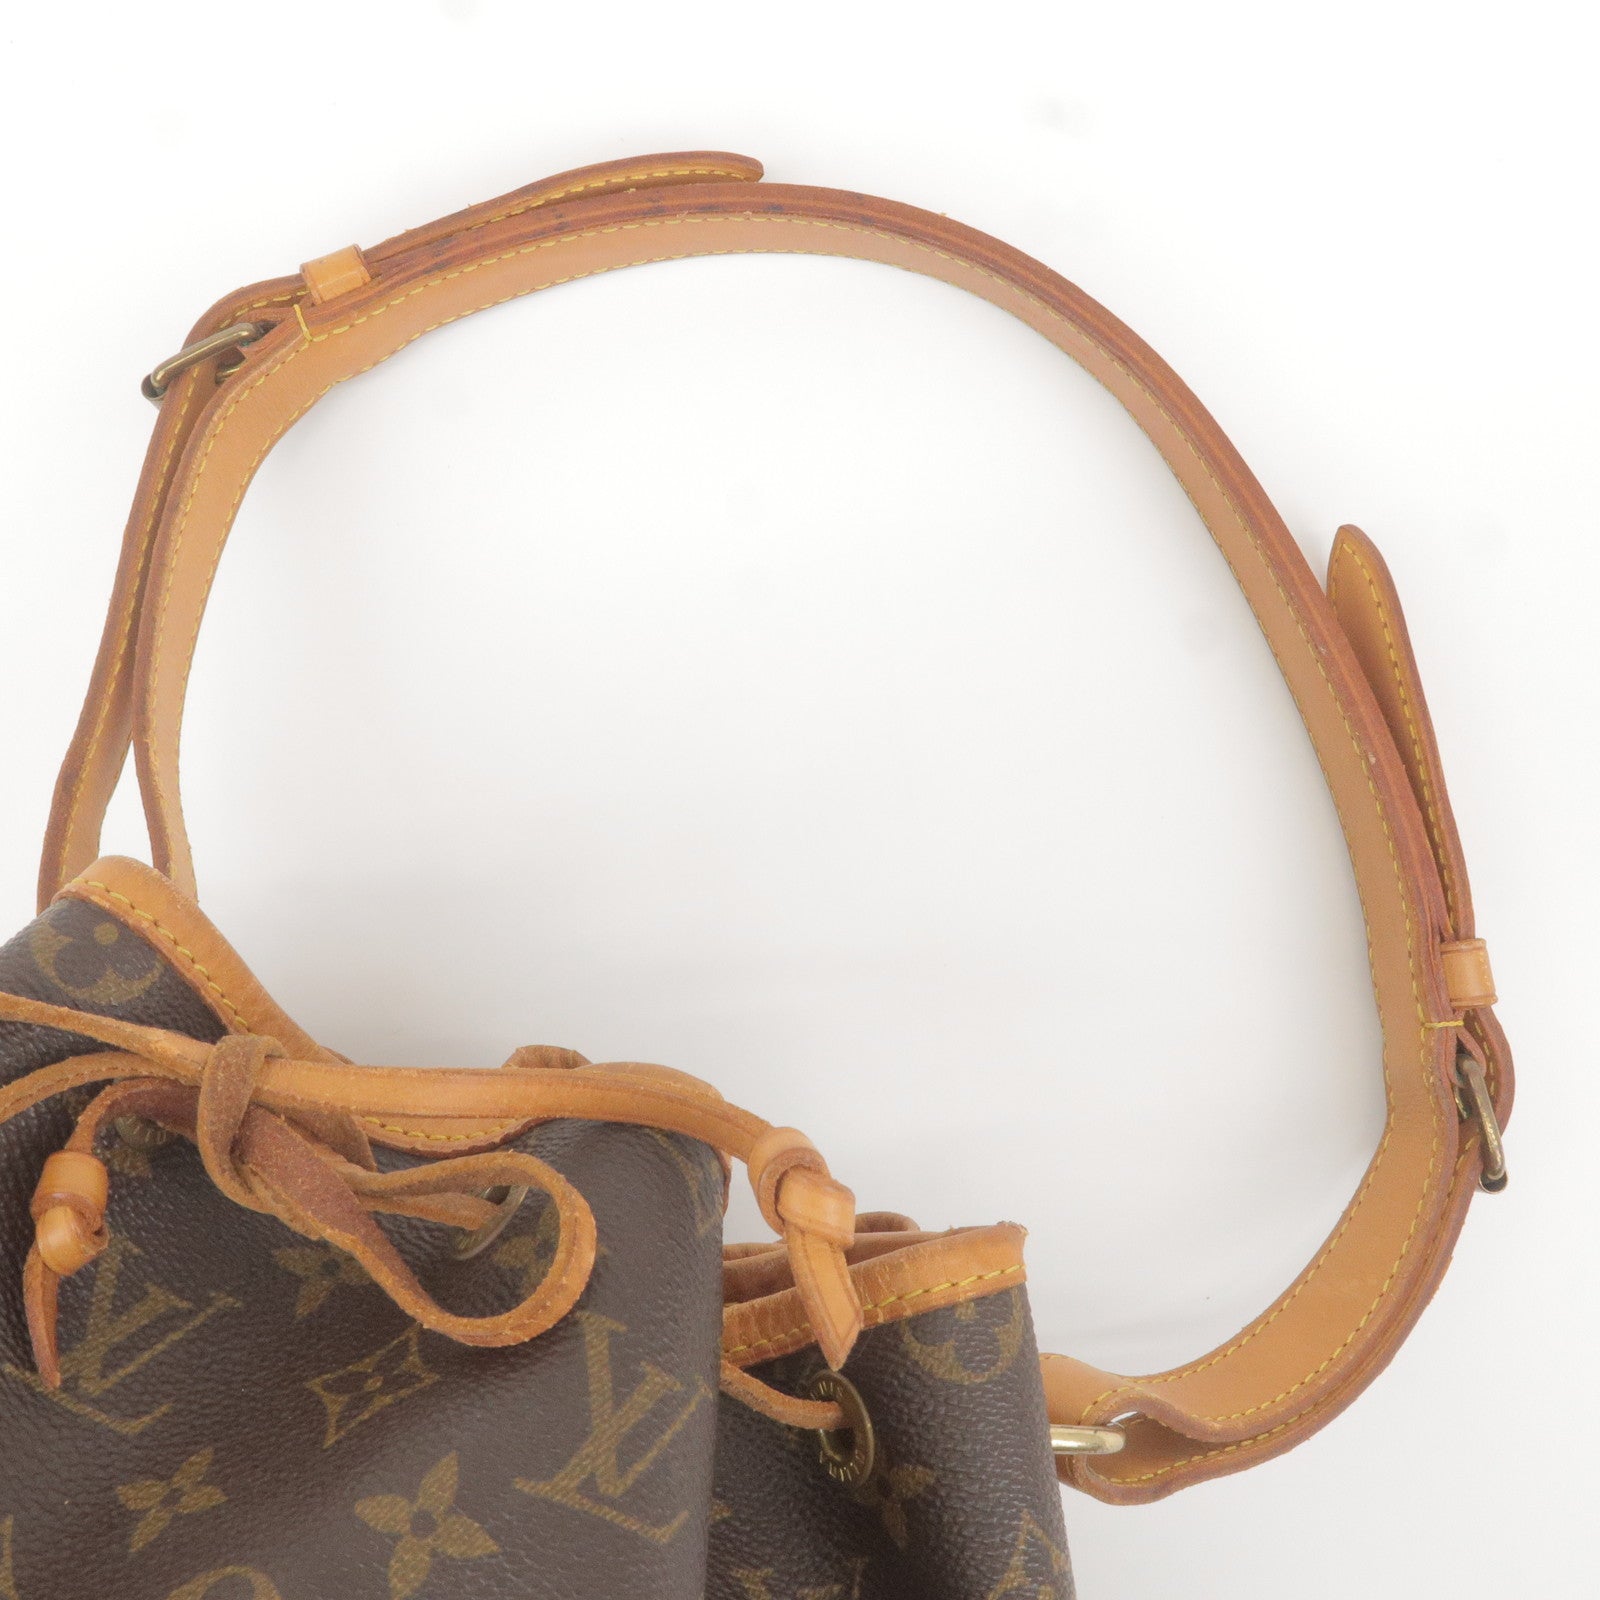 Vuitton - Bag - Louis - Hand - Shoulder - M42224 – dct